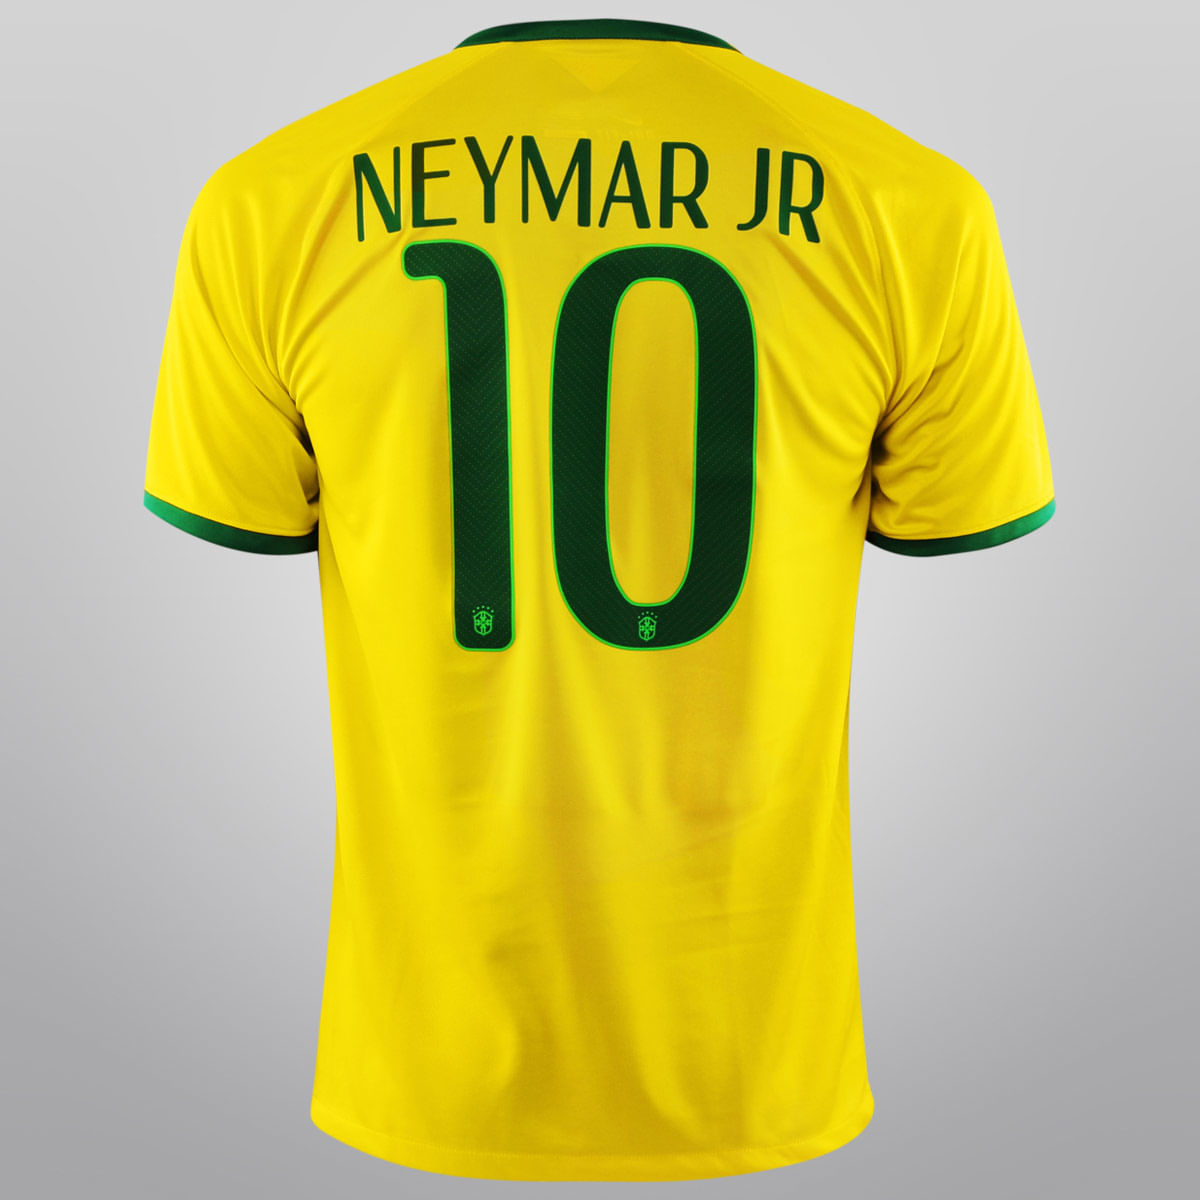 camisa seleção brasileira adidas